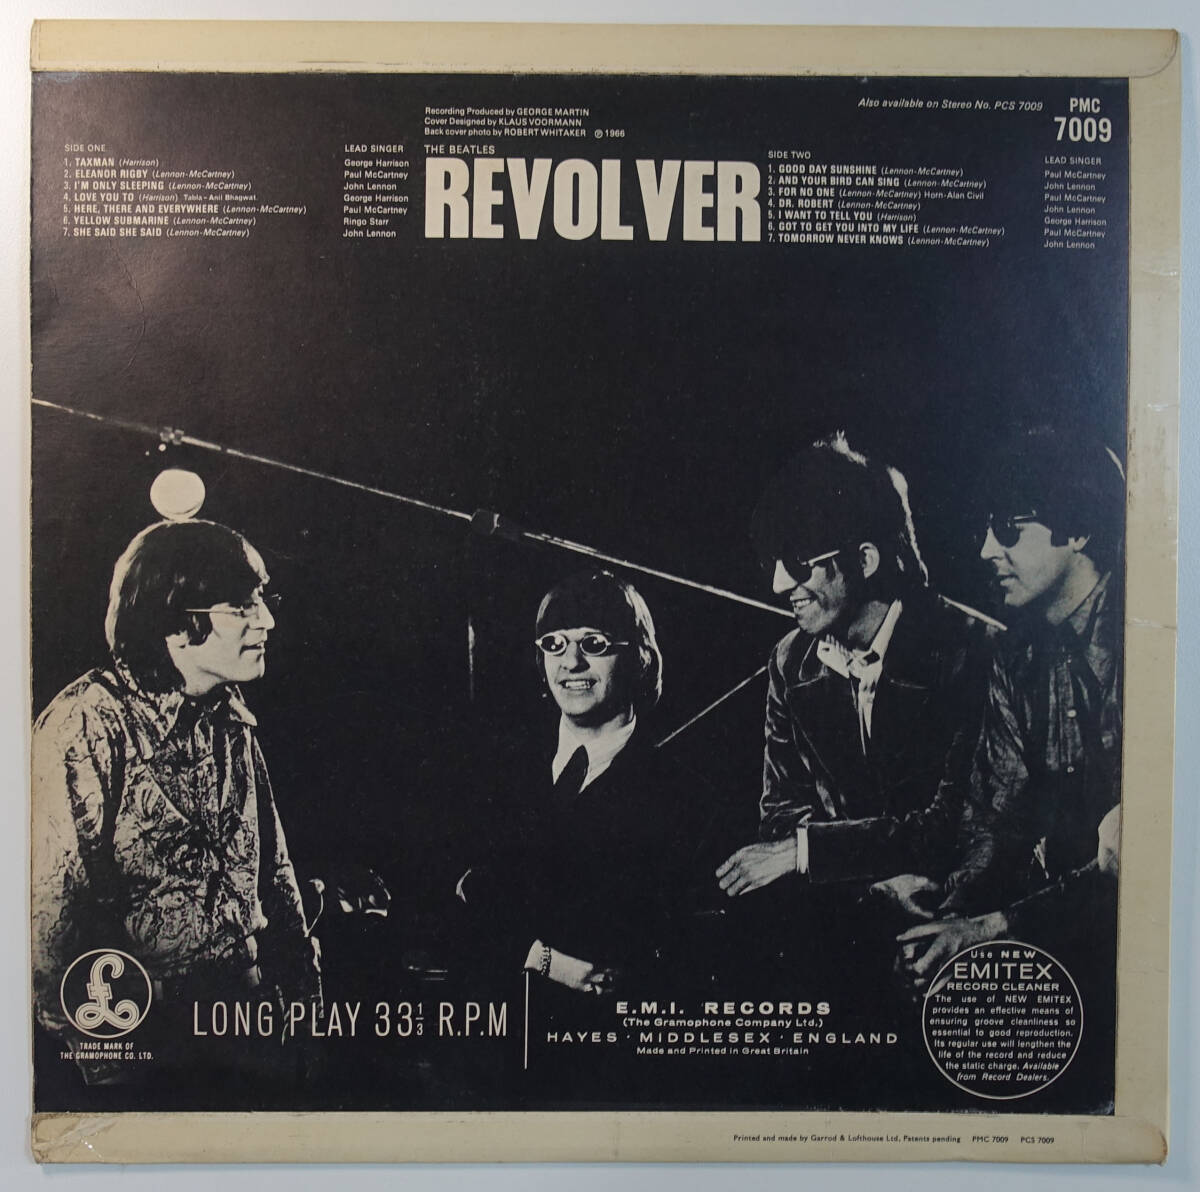 見本盤! 極美! UK Original 初回 Parlophone PMC 7009 REMIX-11 REVOLVER / The Beatles MAT: XEX 606-1+1A_画像2